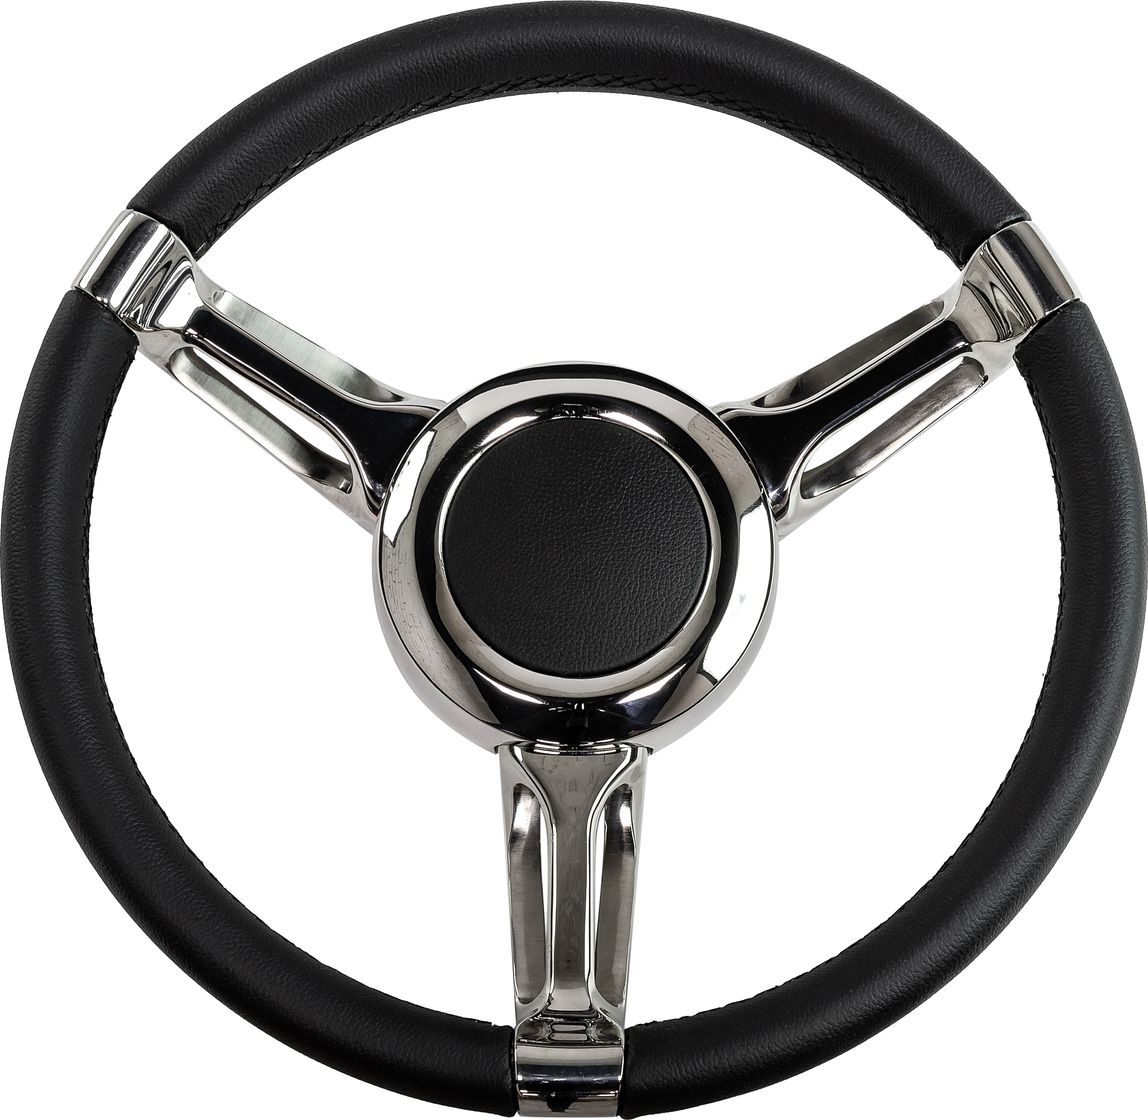 Рулевое колесо Isotta DIAMA 350 мм 188-5-NM-ST 4 шт обод колеса из алюминиевого сплава beadlock 2 2 дюйма замена ступицы колесных дисков для 1 10 1 8 trx4 90046 90047 rr10 rc car